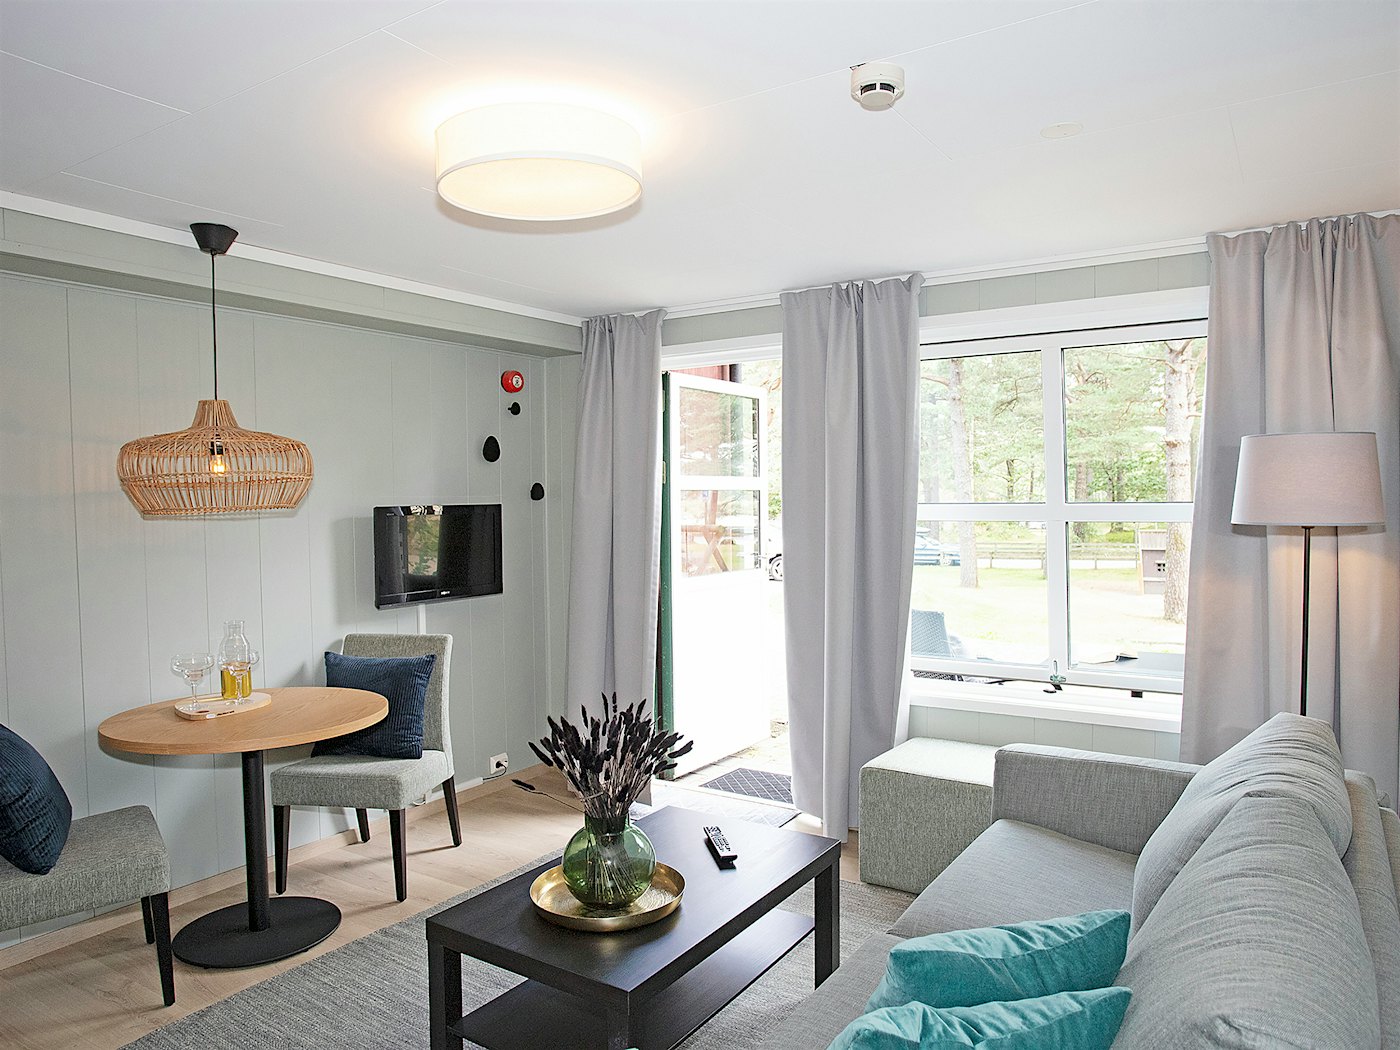 Lys og moderne stue med sofa, spisebord, TV, store vinduer med lange lyse gardinger. Foto